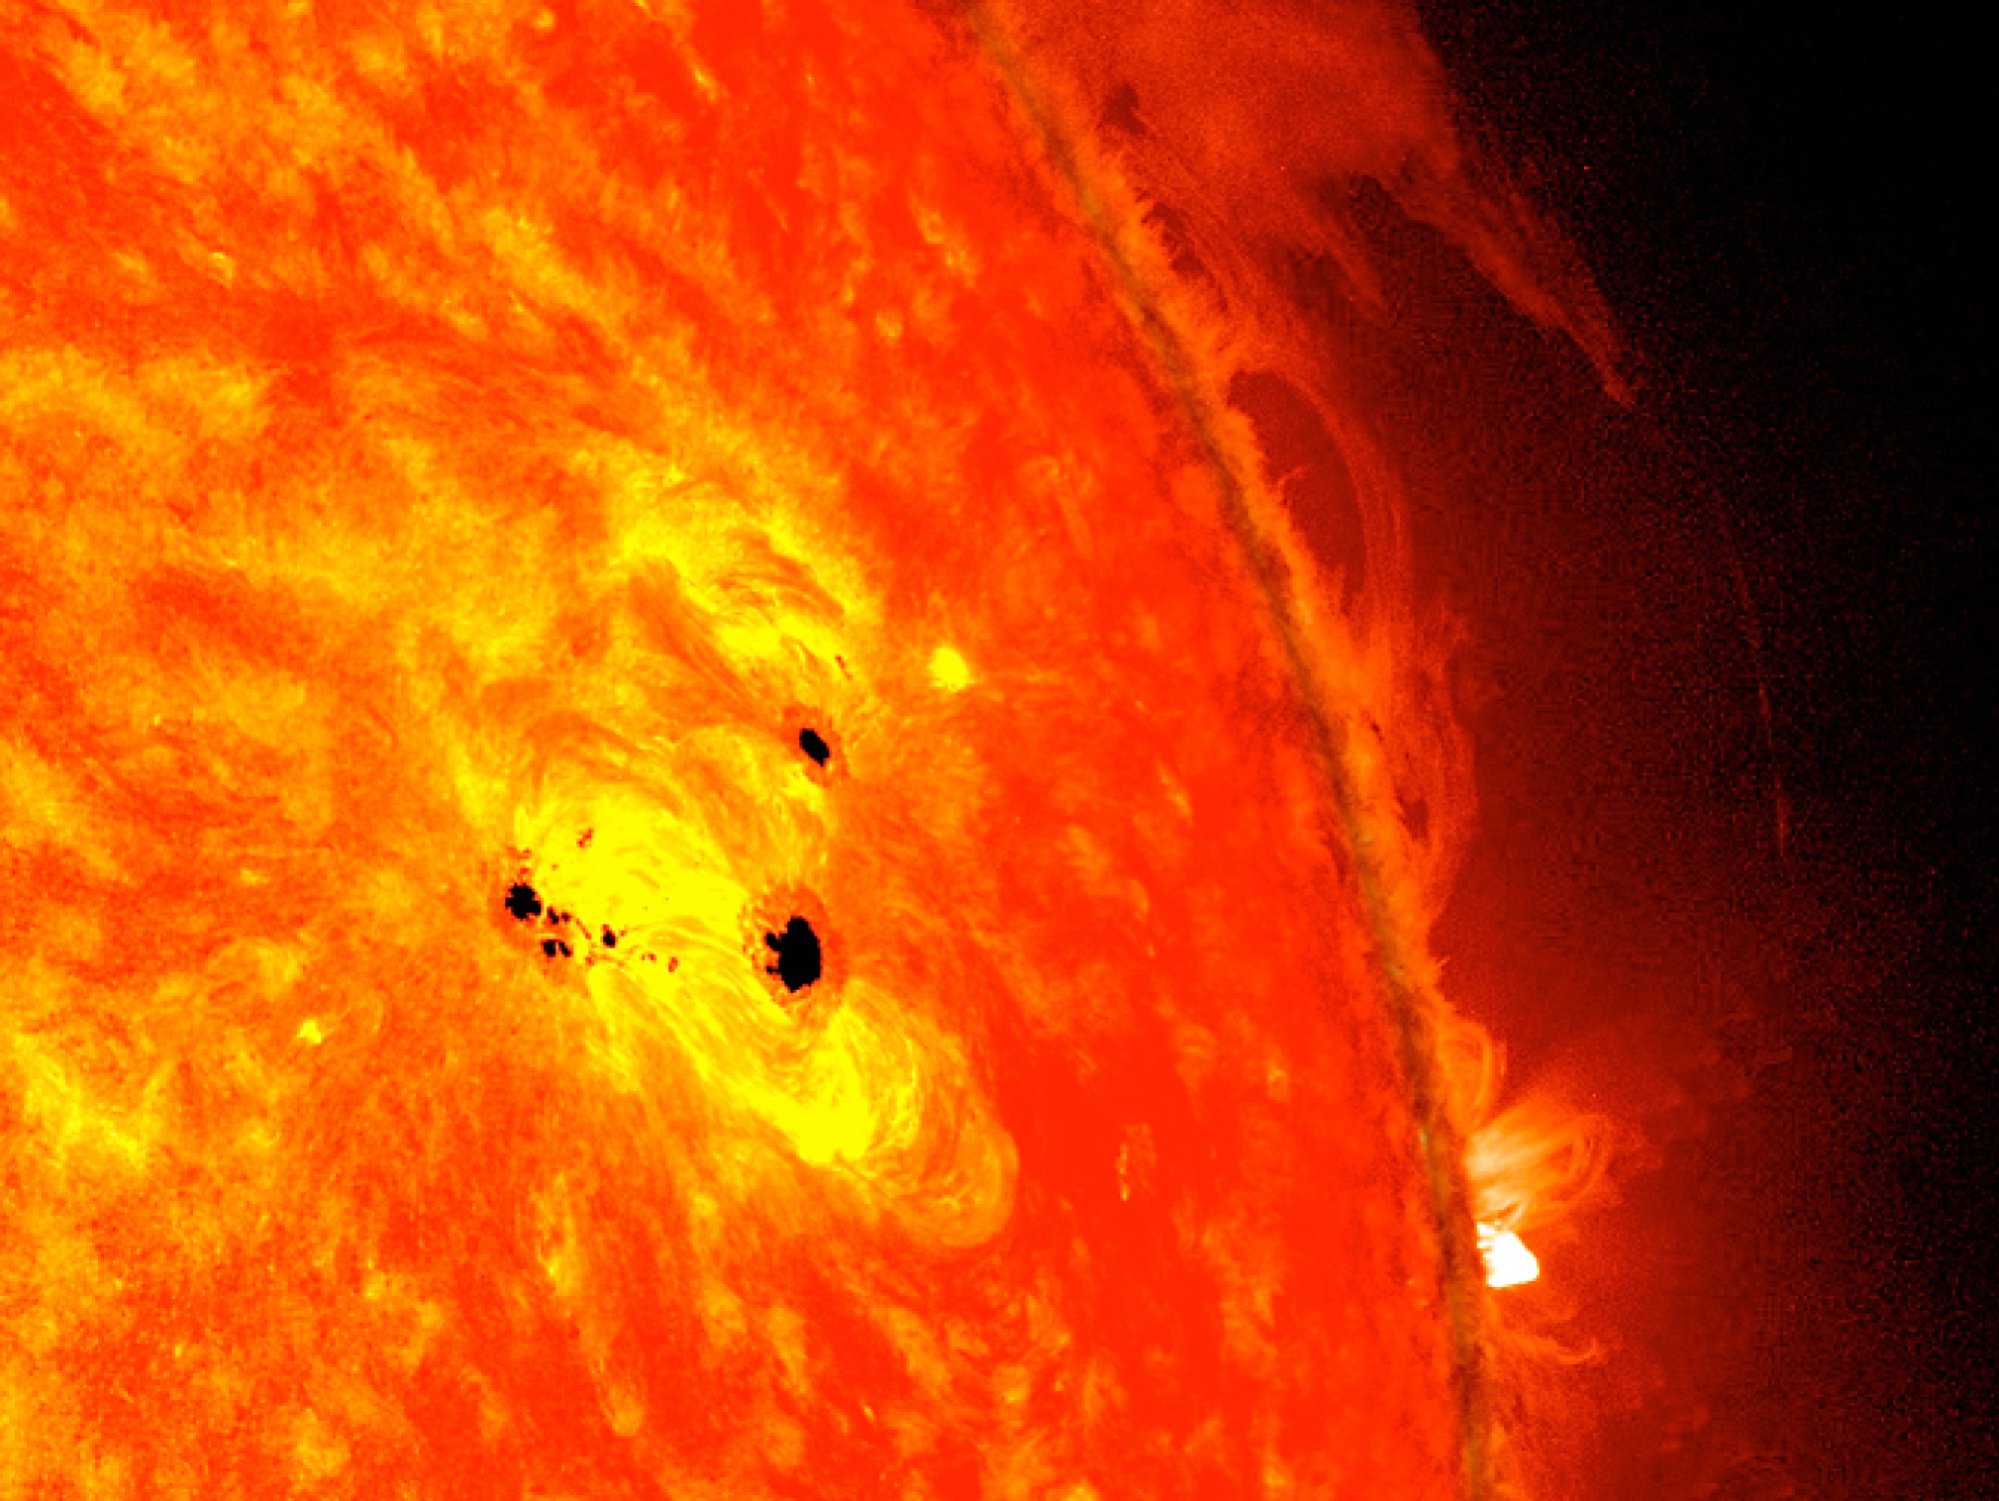 NASA studying sunspots on the sun